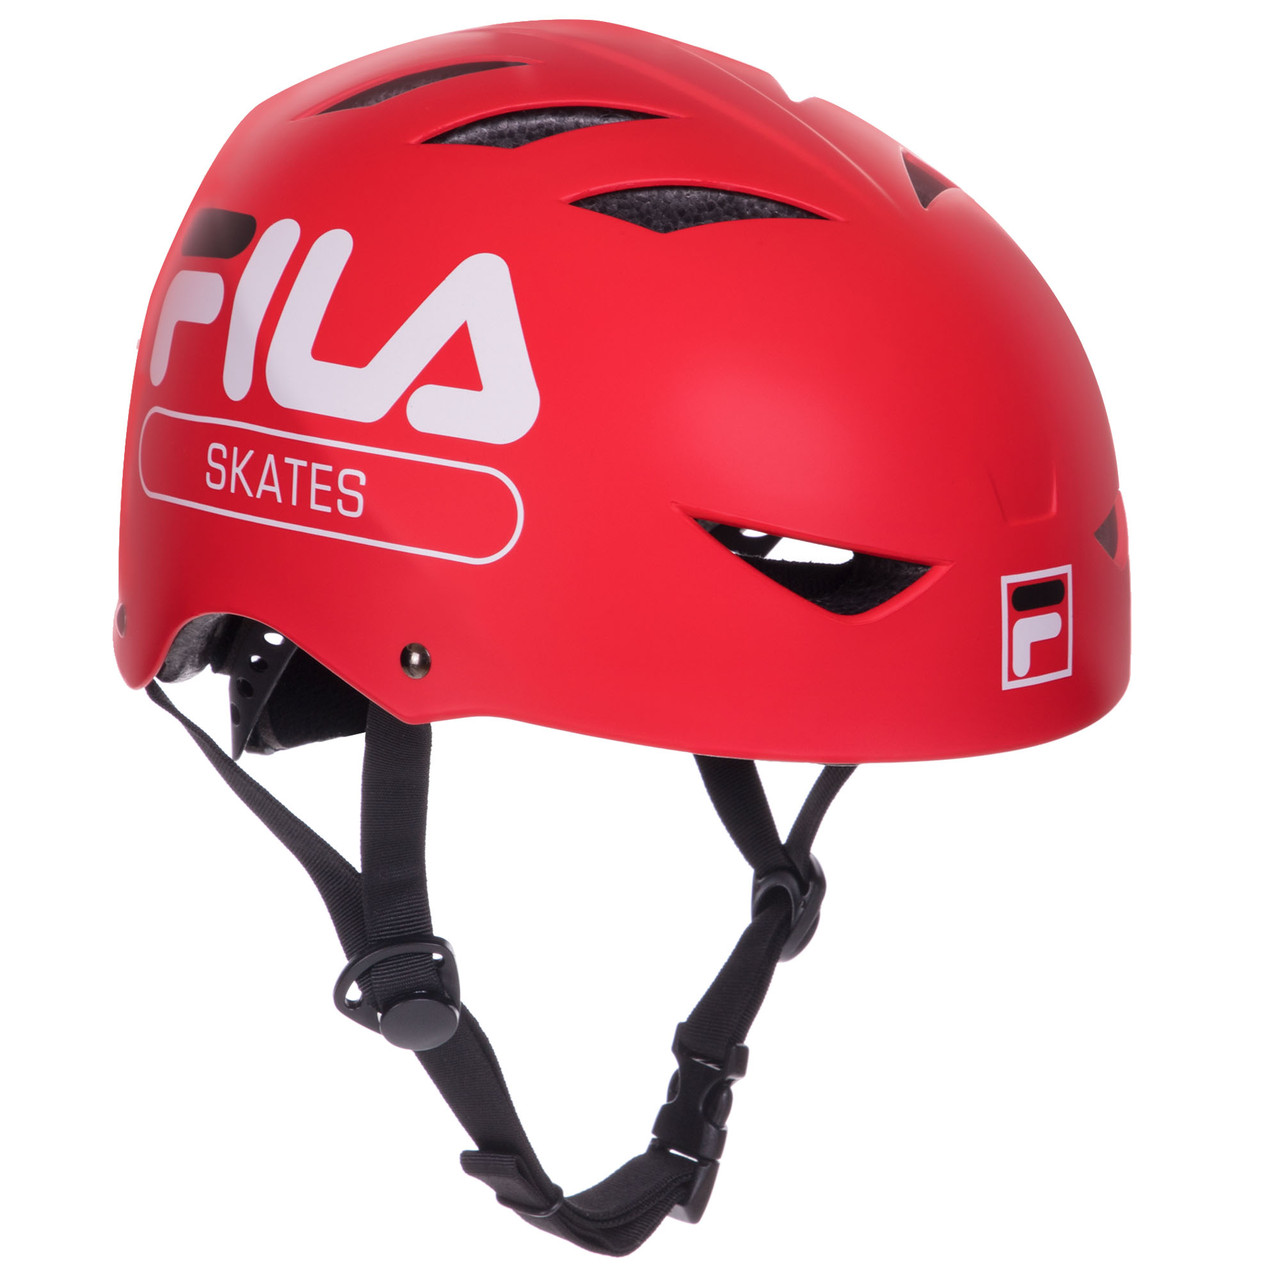 Шлем для экстремального спорта Кайтсерфинг FILA 6075110 L 58-61 Красны